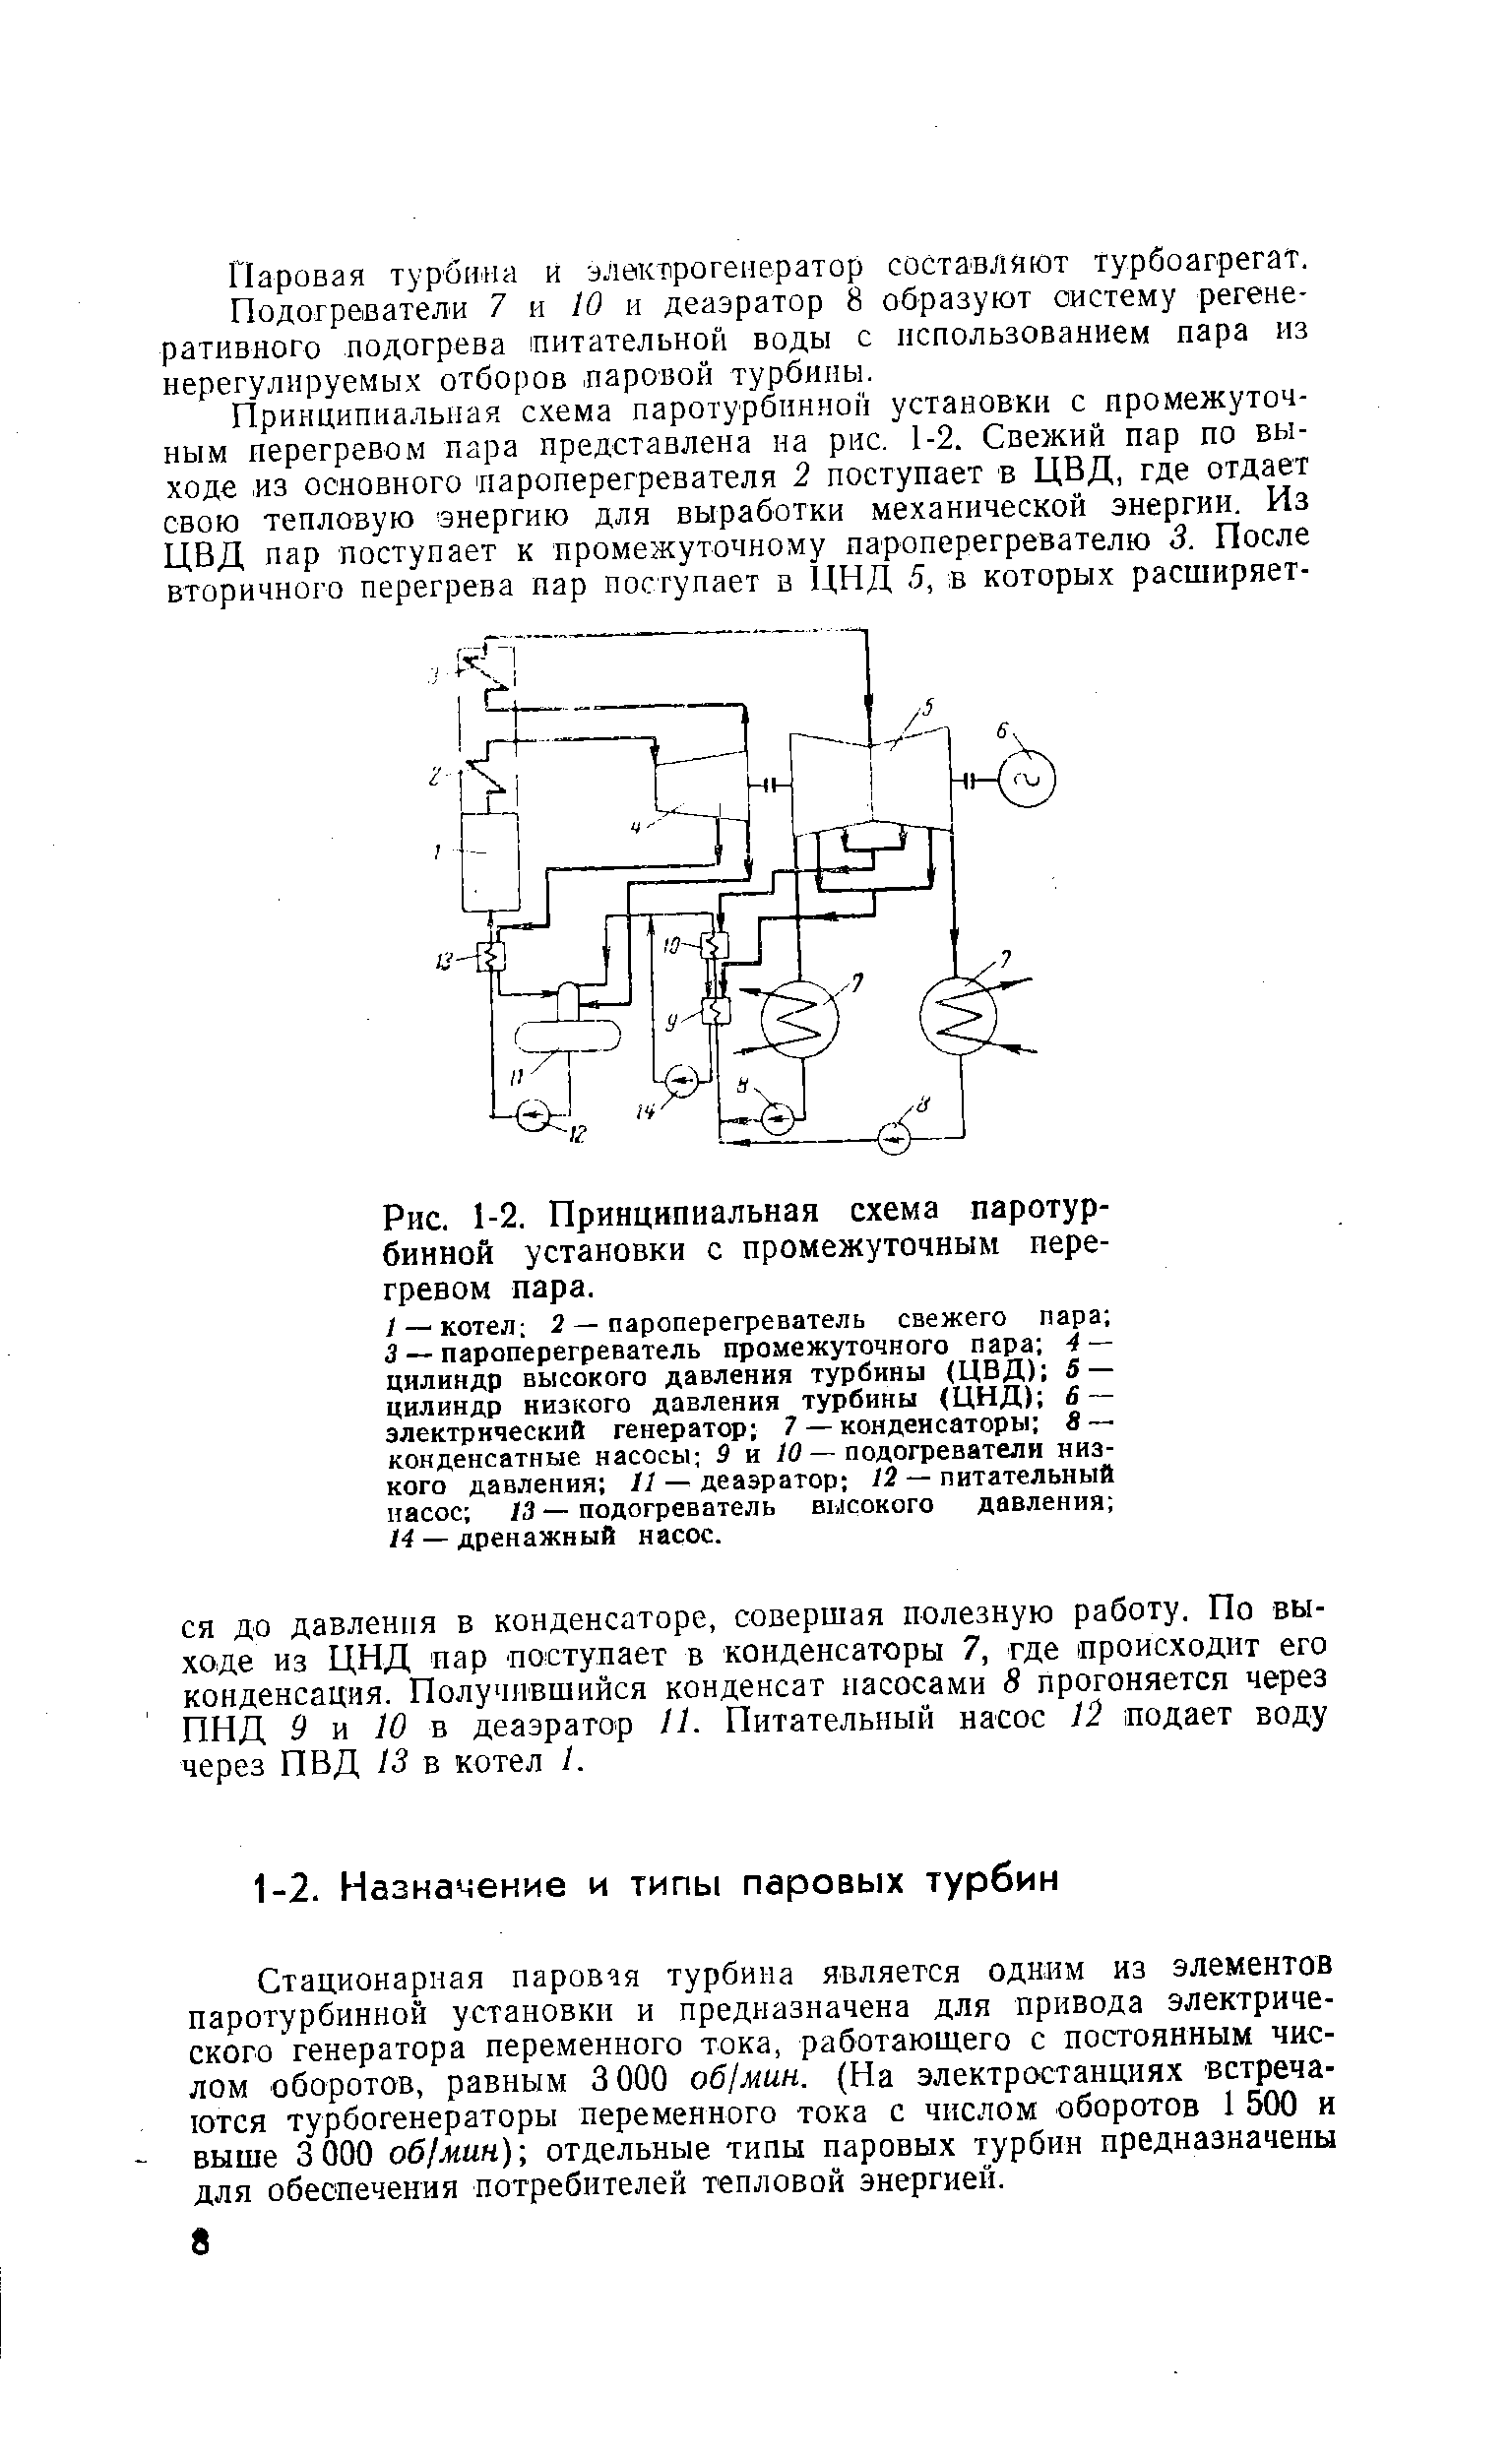 Рис. 1-2. Принципиальная схема паротурбинной установки с промежуточным перегревом пара.
